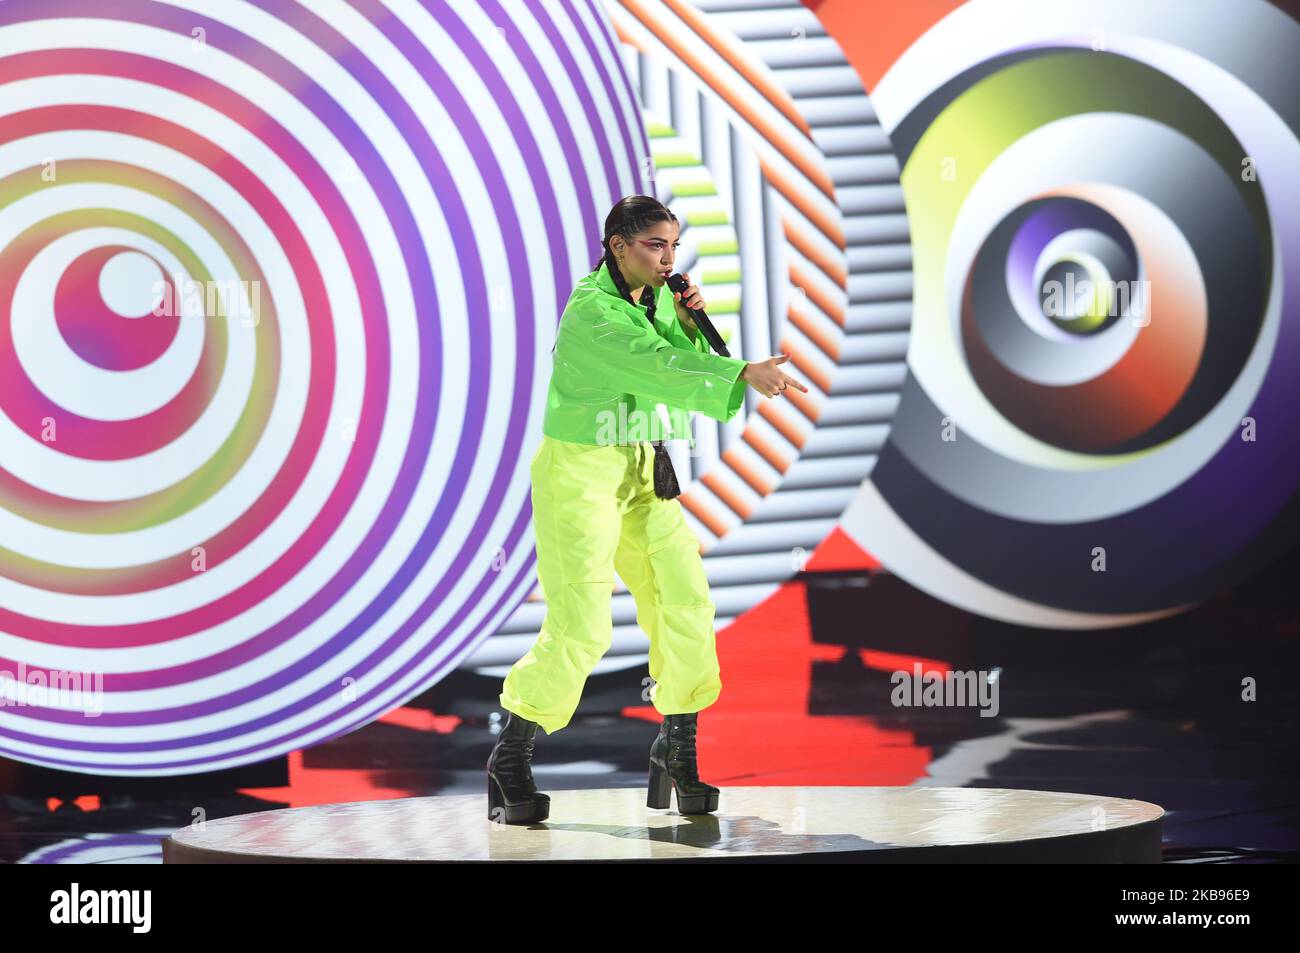 Booda chante lors de la première édition live de 13th de la version italienne du spectacle international de talents X Factor le 24 octobre 2019 à Candy Arena à Monza, Italie. (Photo par Andrea Diodato/NurPhoto) Banque D'Images